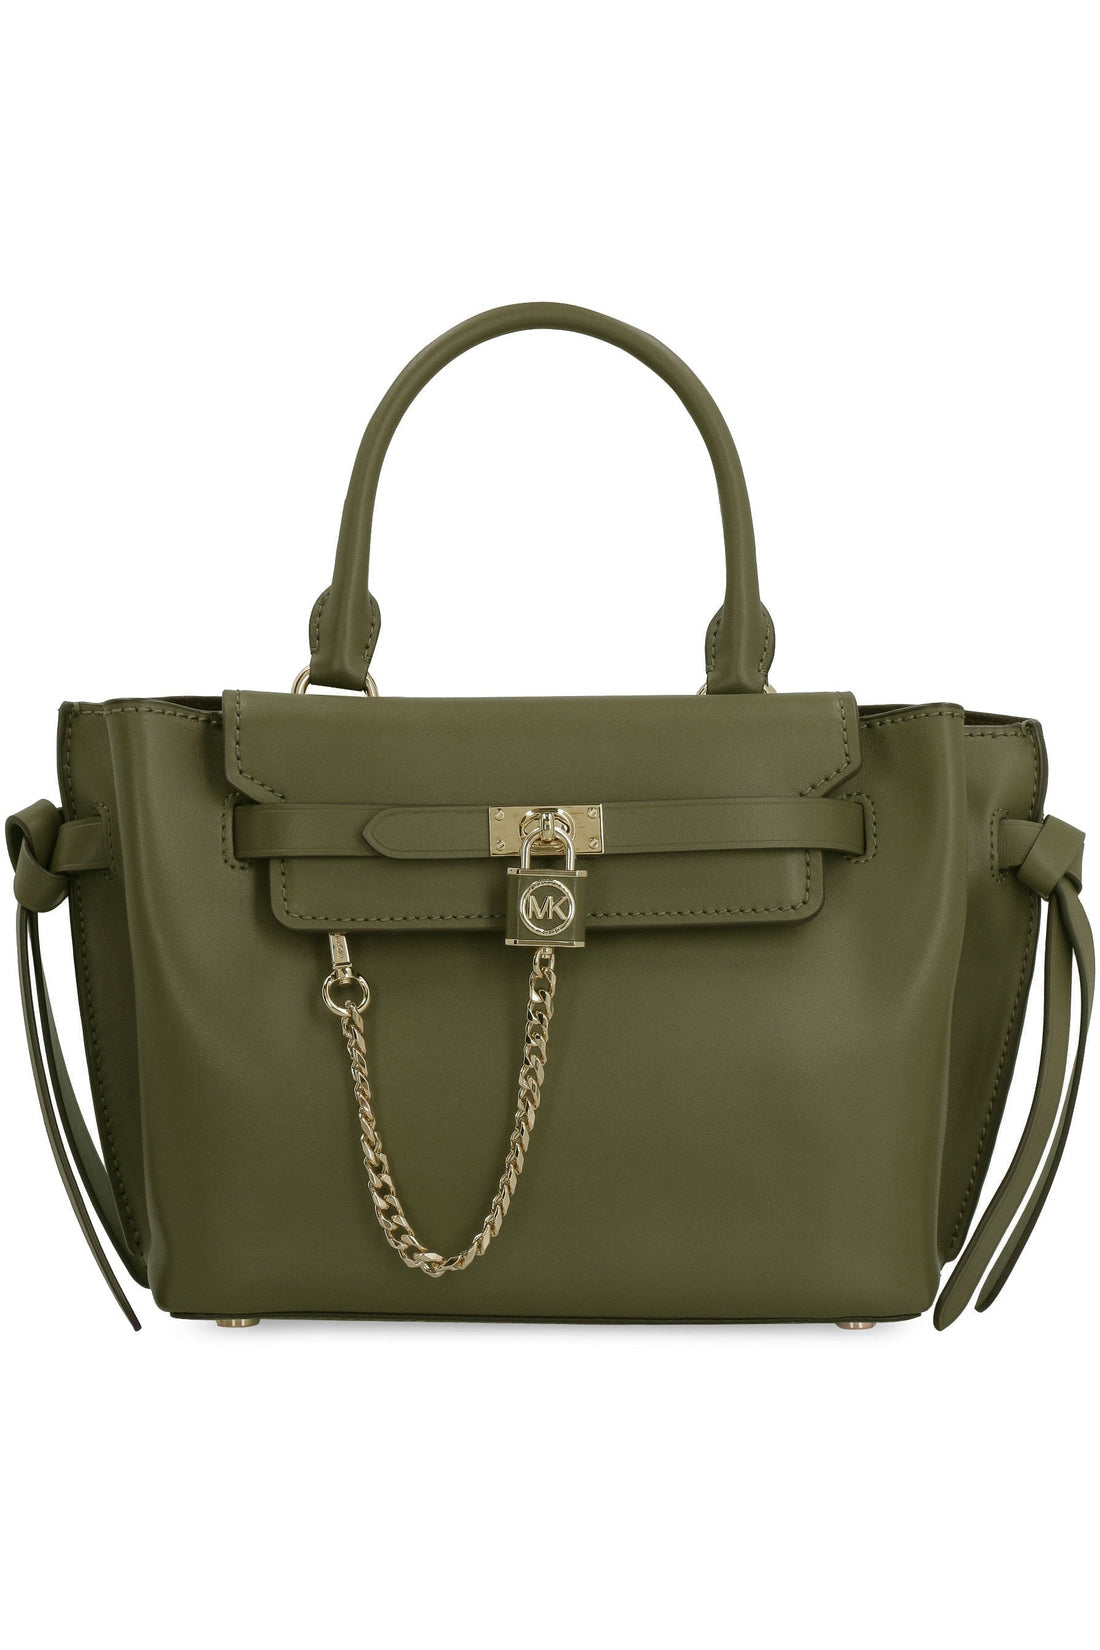 MICHAEL MICHAEL KORS-OUTLET-SALE-Hamilton Legacy leather handbag-ARCHIVIST